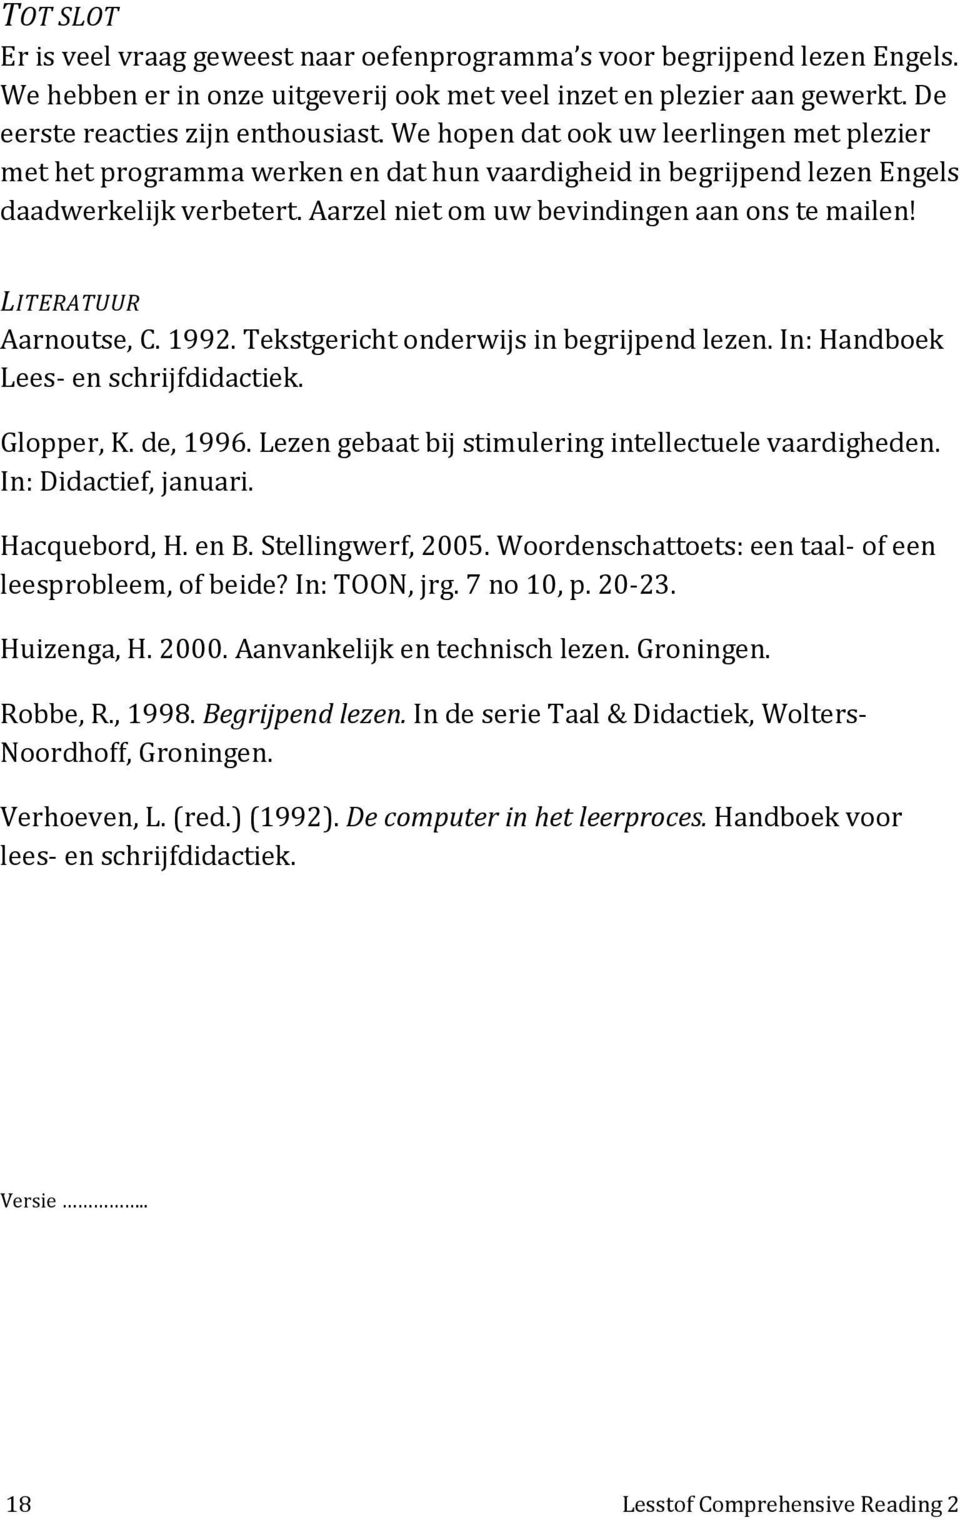 LITERATUUR Aarnoutse, C. 1992. Tekstgericht onderwijs in begrijpend lezen. In: Handboek Lees- en schrijfdidactiek. Glopper, K. de, 1996. Lezen gebaat bij stimulering intellectuele vaardigheden.